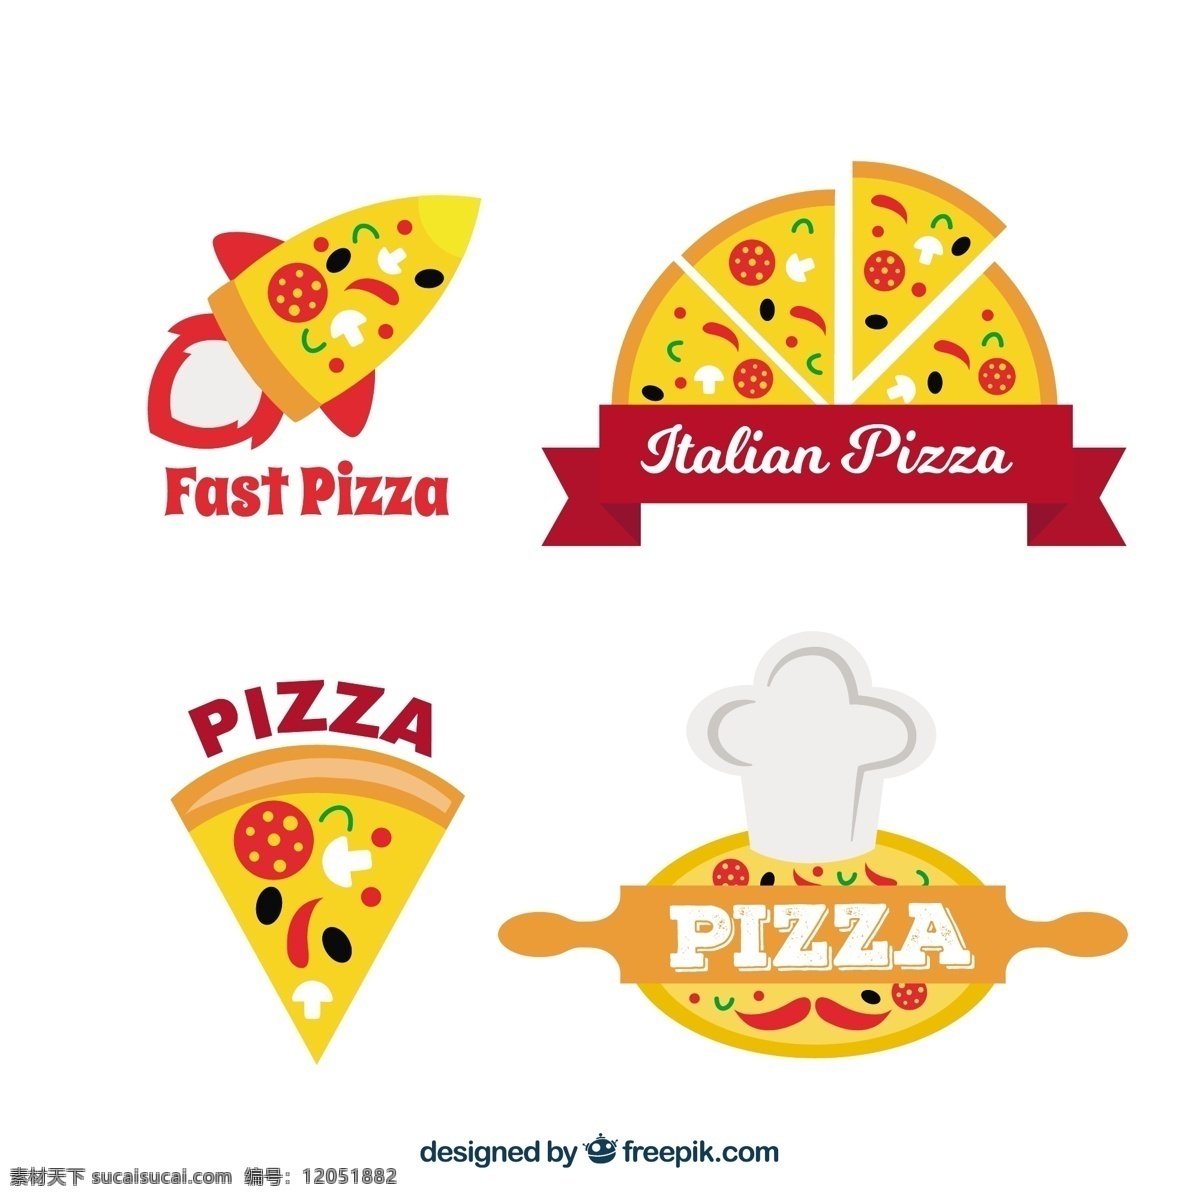 比萨 店 标志 设置 食品 商业 餐厅 比萨饼 交货 厨师 烹饪 企业 公司 品牌 意大利 企业形象 食品标志 餐厅标志 吃 符号 午餐 身份